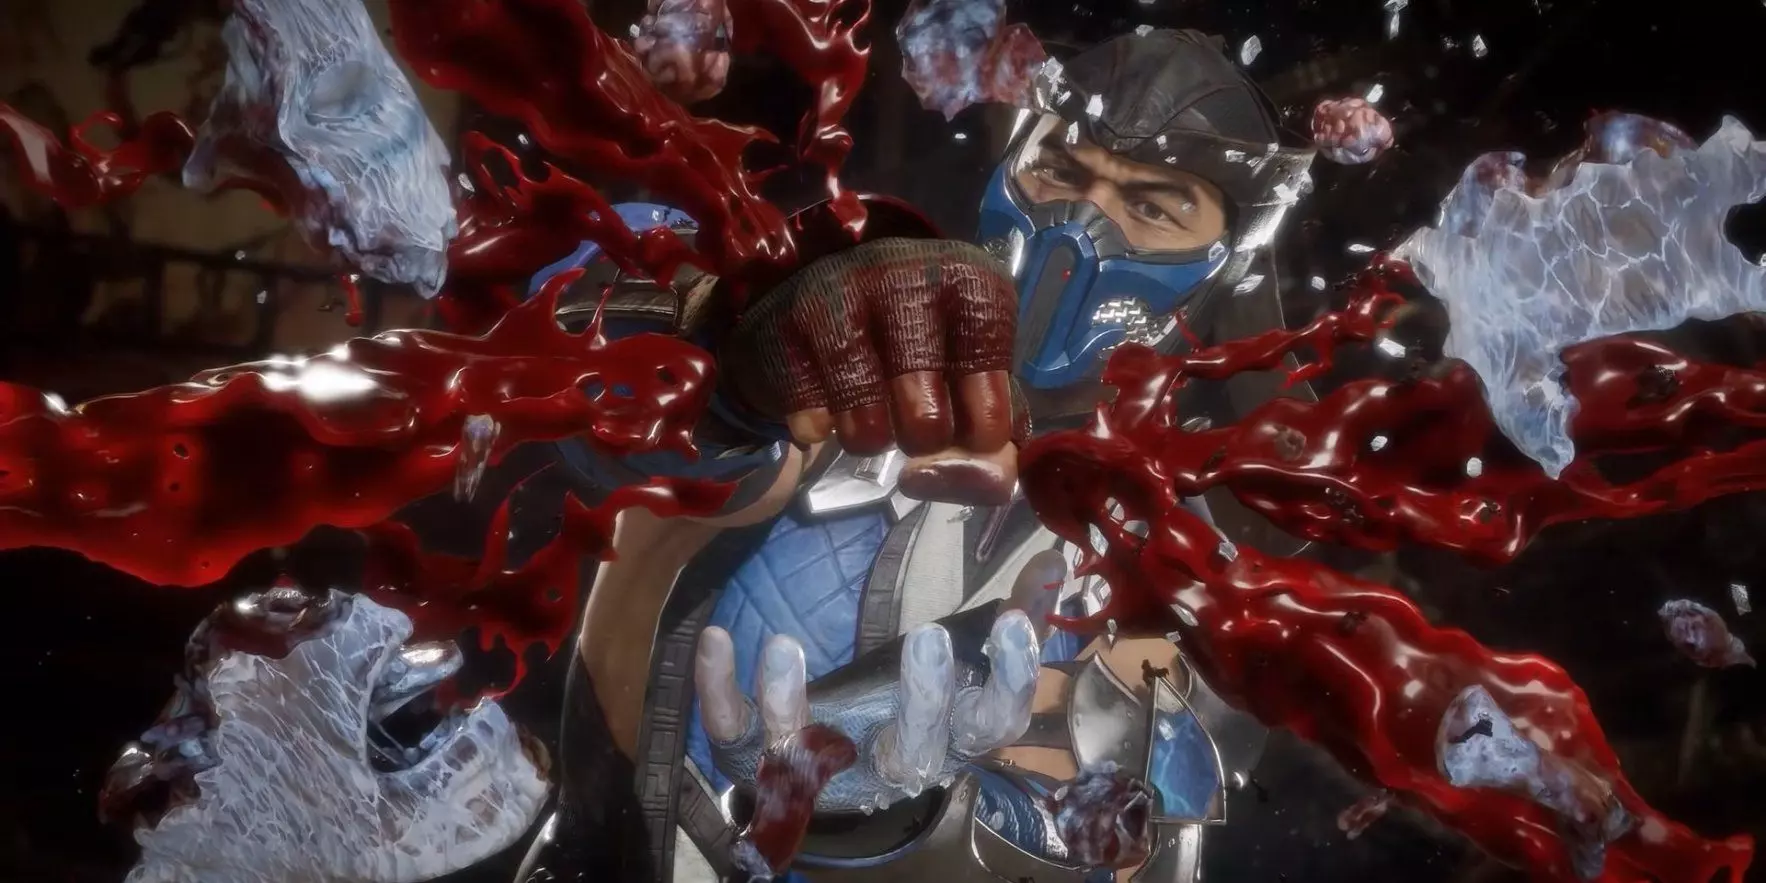 Brutálisak lesznek az új Mortal Kombat-film kivégzései